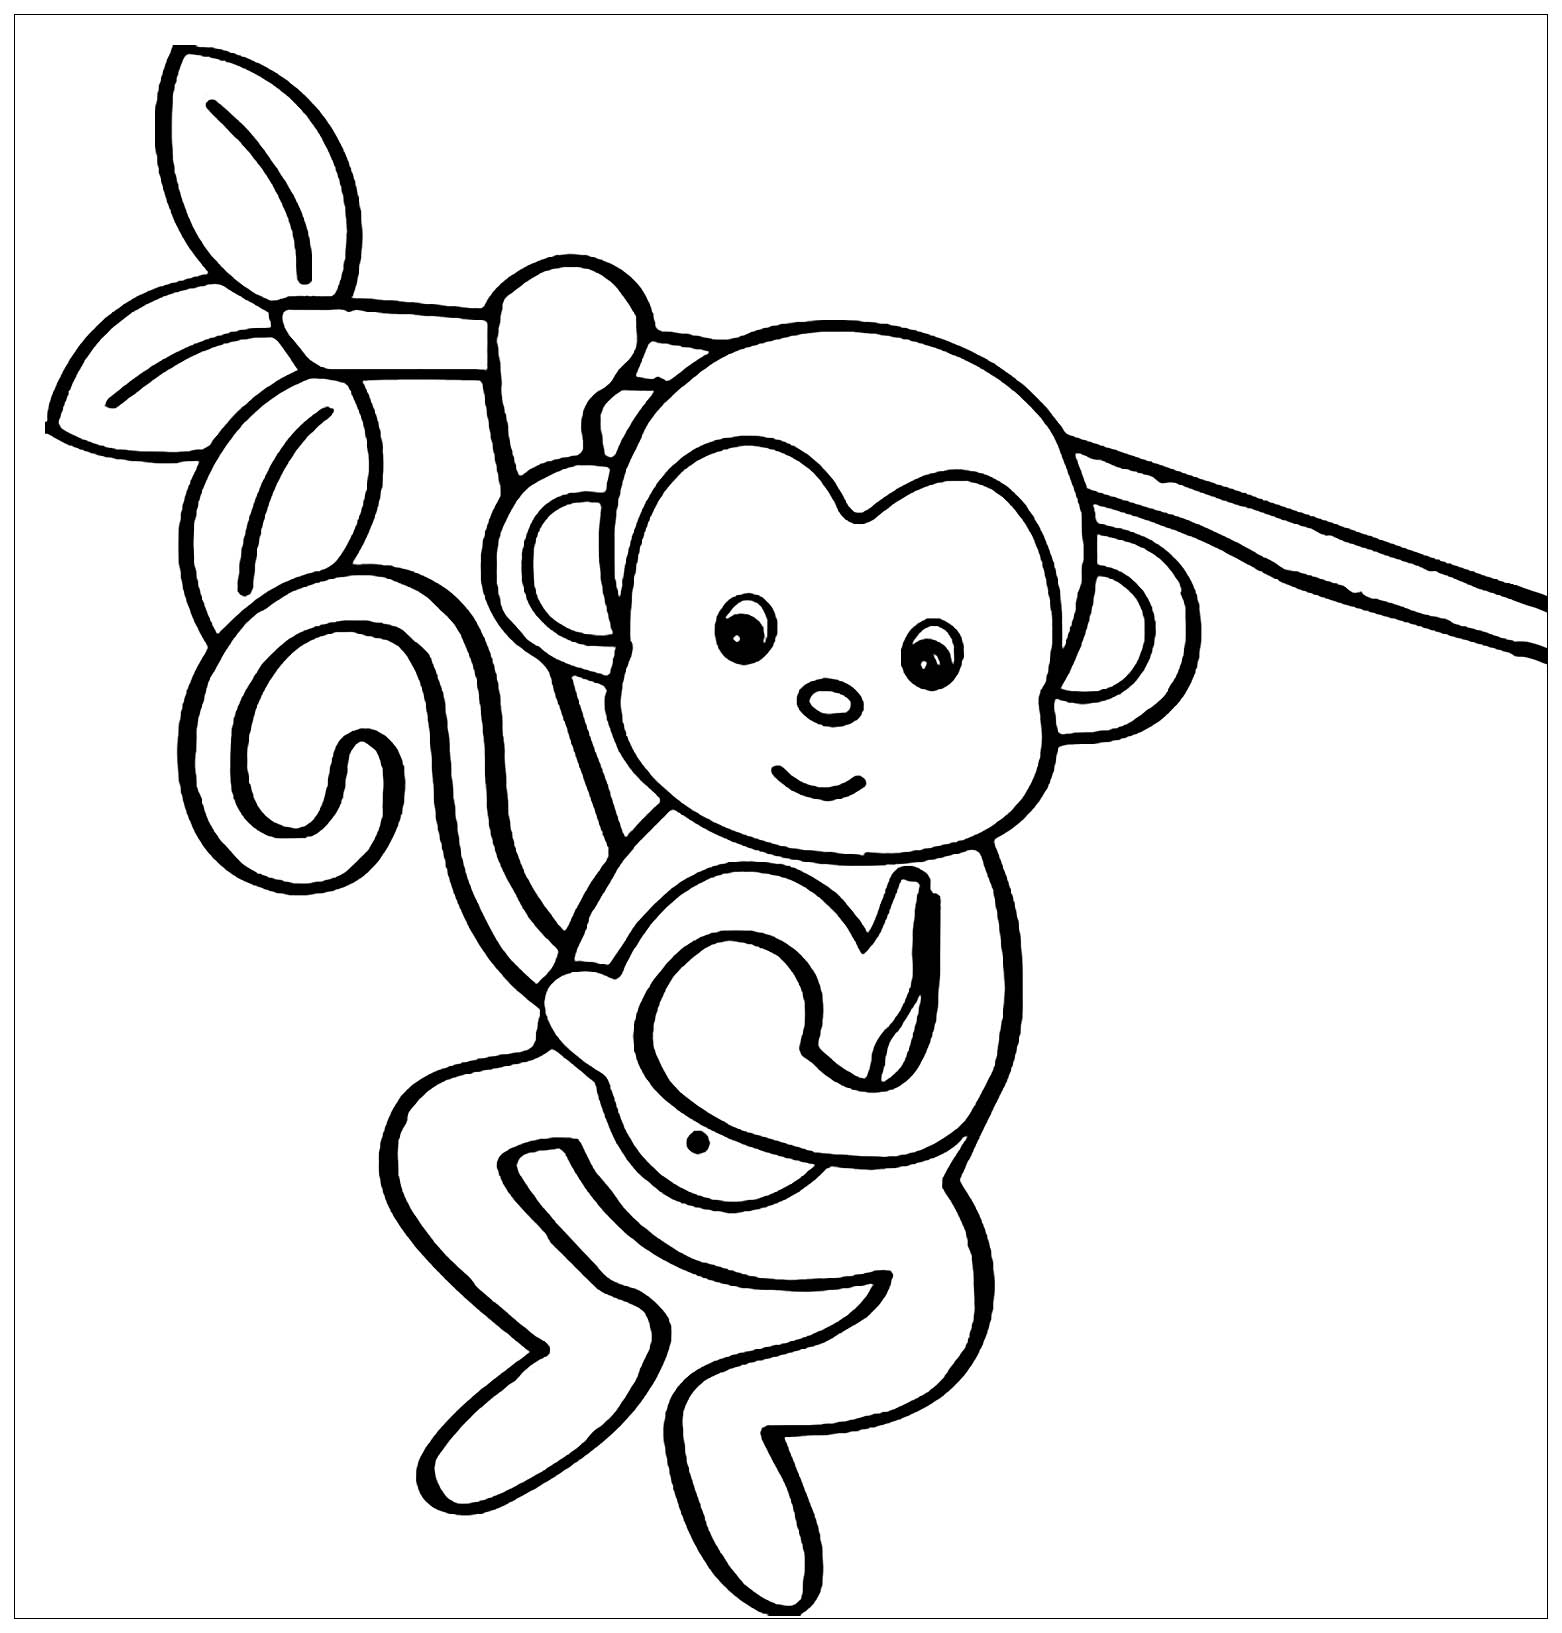 Coloriage sympa de singe à imprimer et colorier